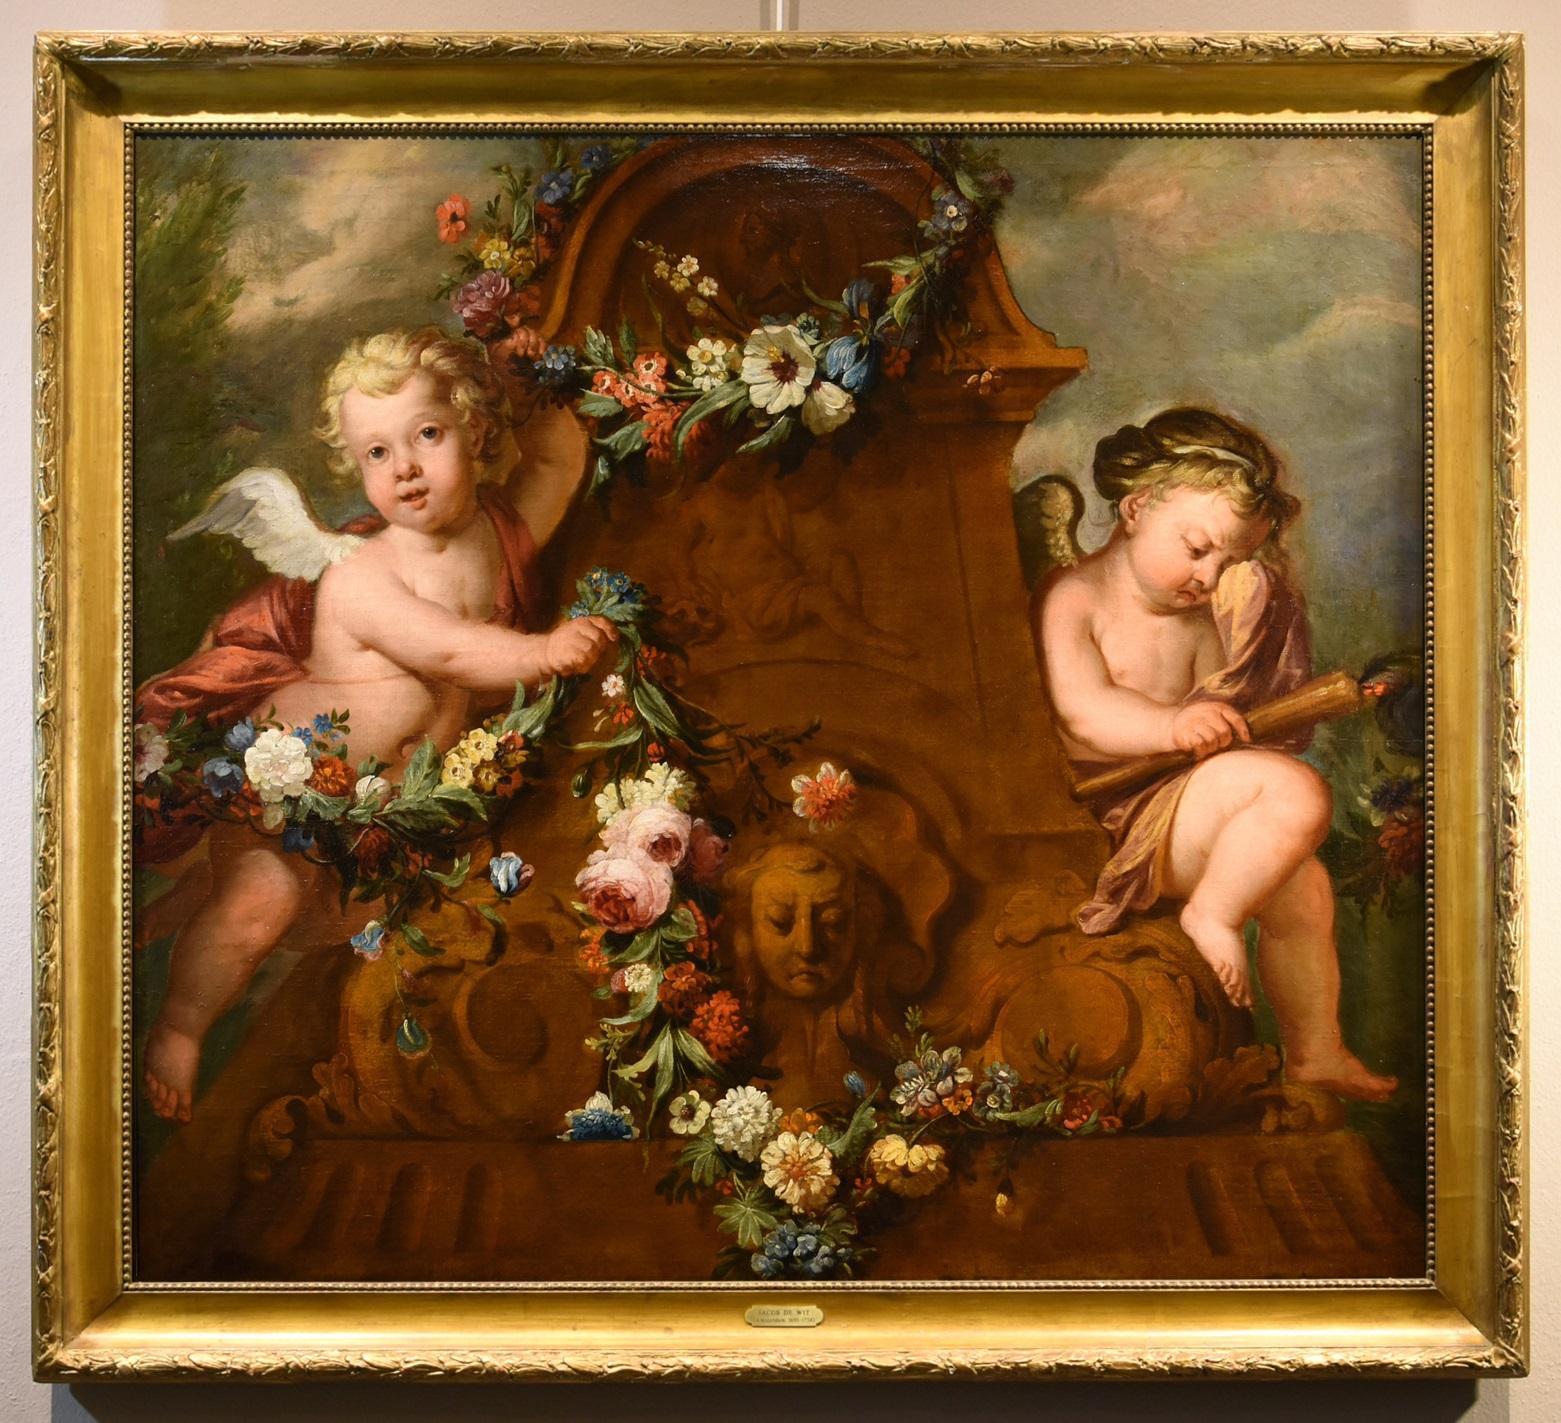 De Wit Blumenstillleben Gemälde Öl auf Leinwand 18. Jahrhundert Flemish Cupids Art – Painting von Jacob De Wit (Amsterdam, 1695 - 1754)